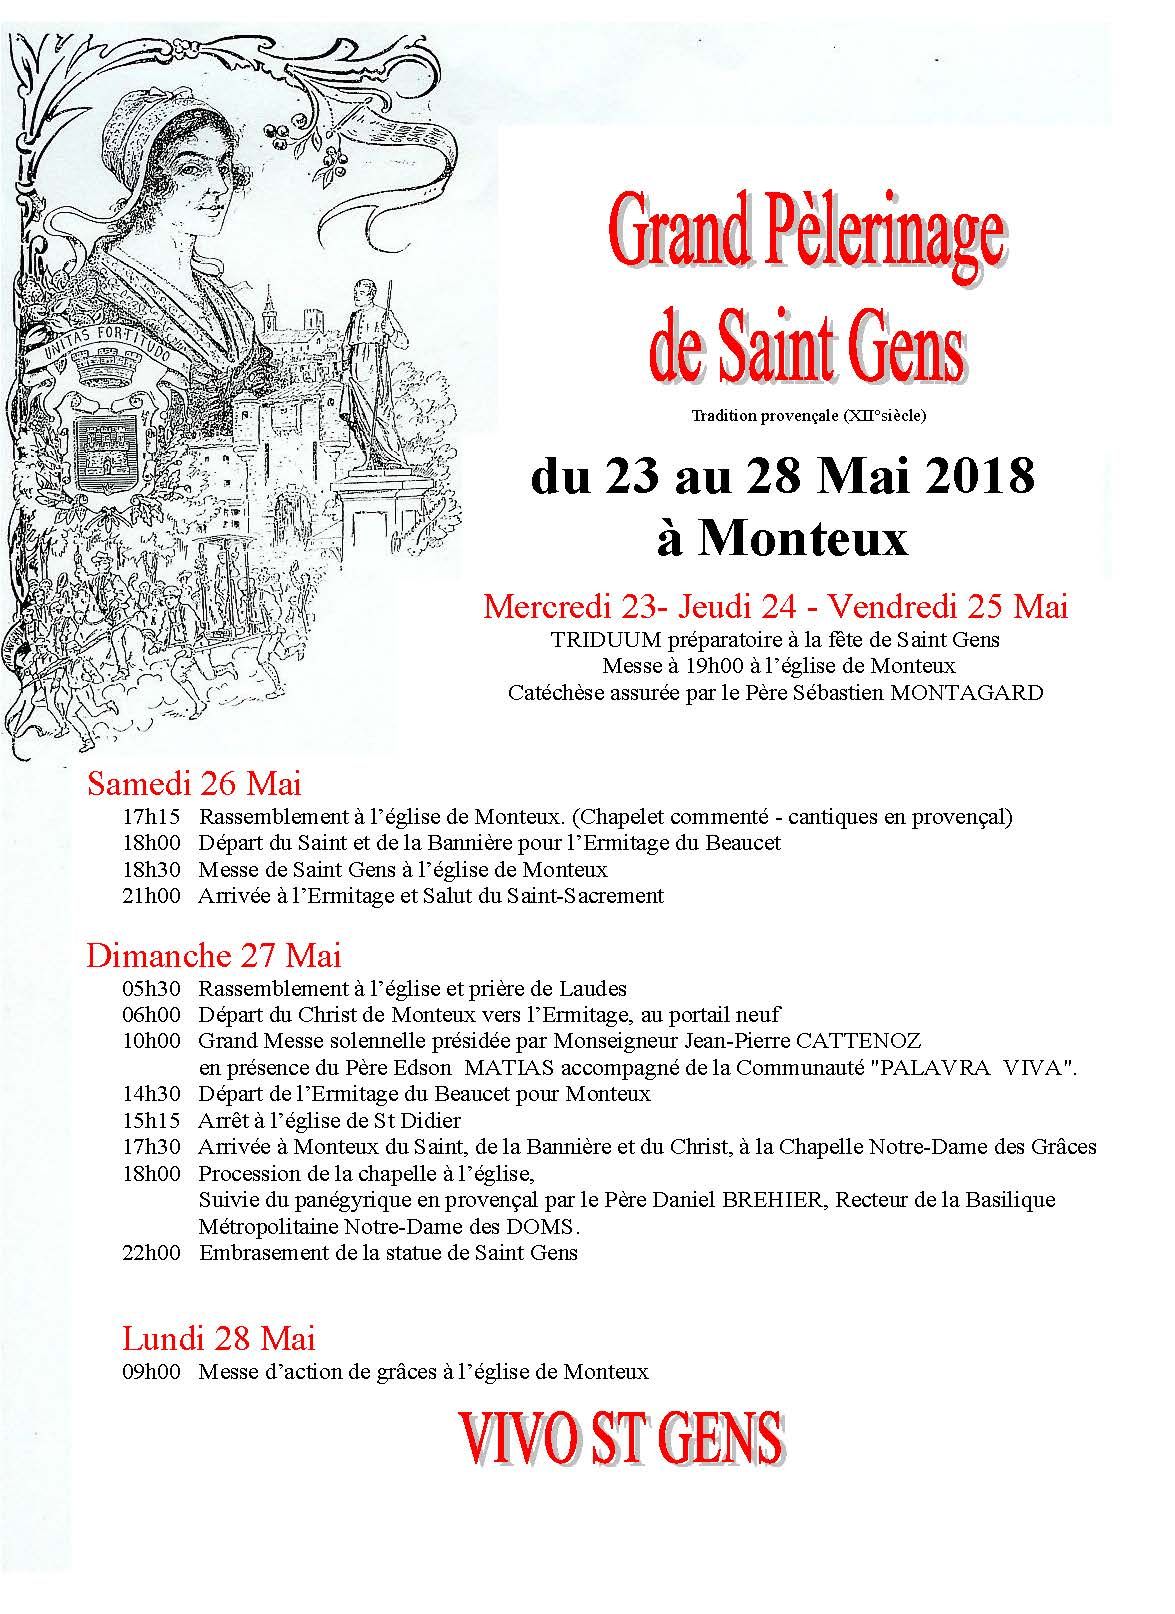 Grand pèlerinage de Saint Gens du 23 au 28 mai 2018 à Monteux (84)